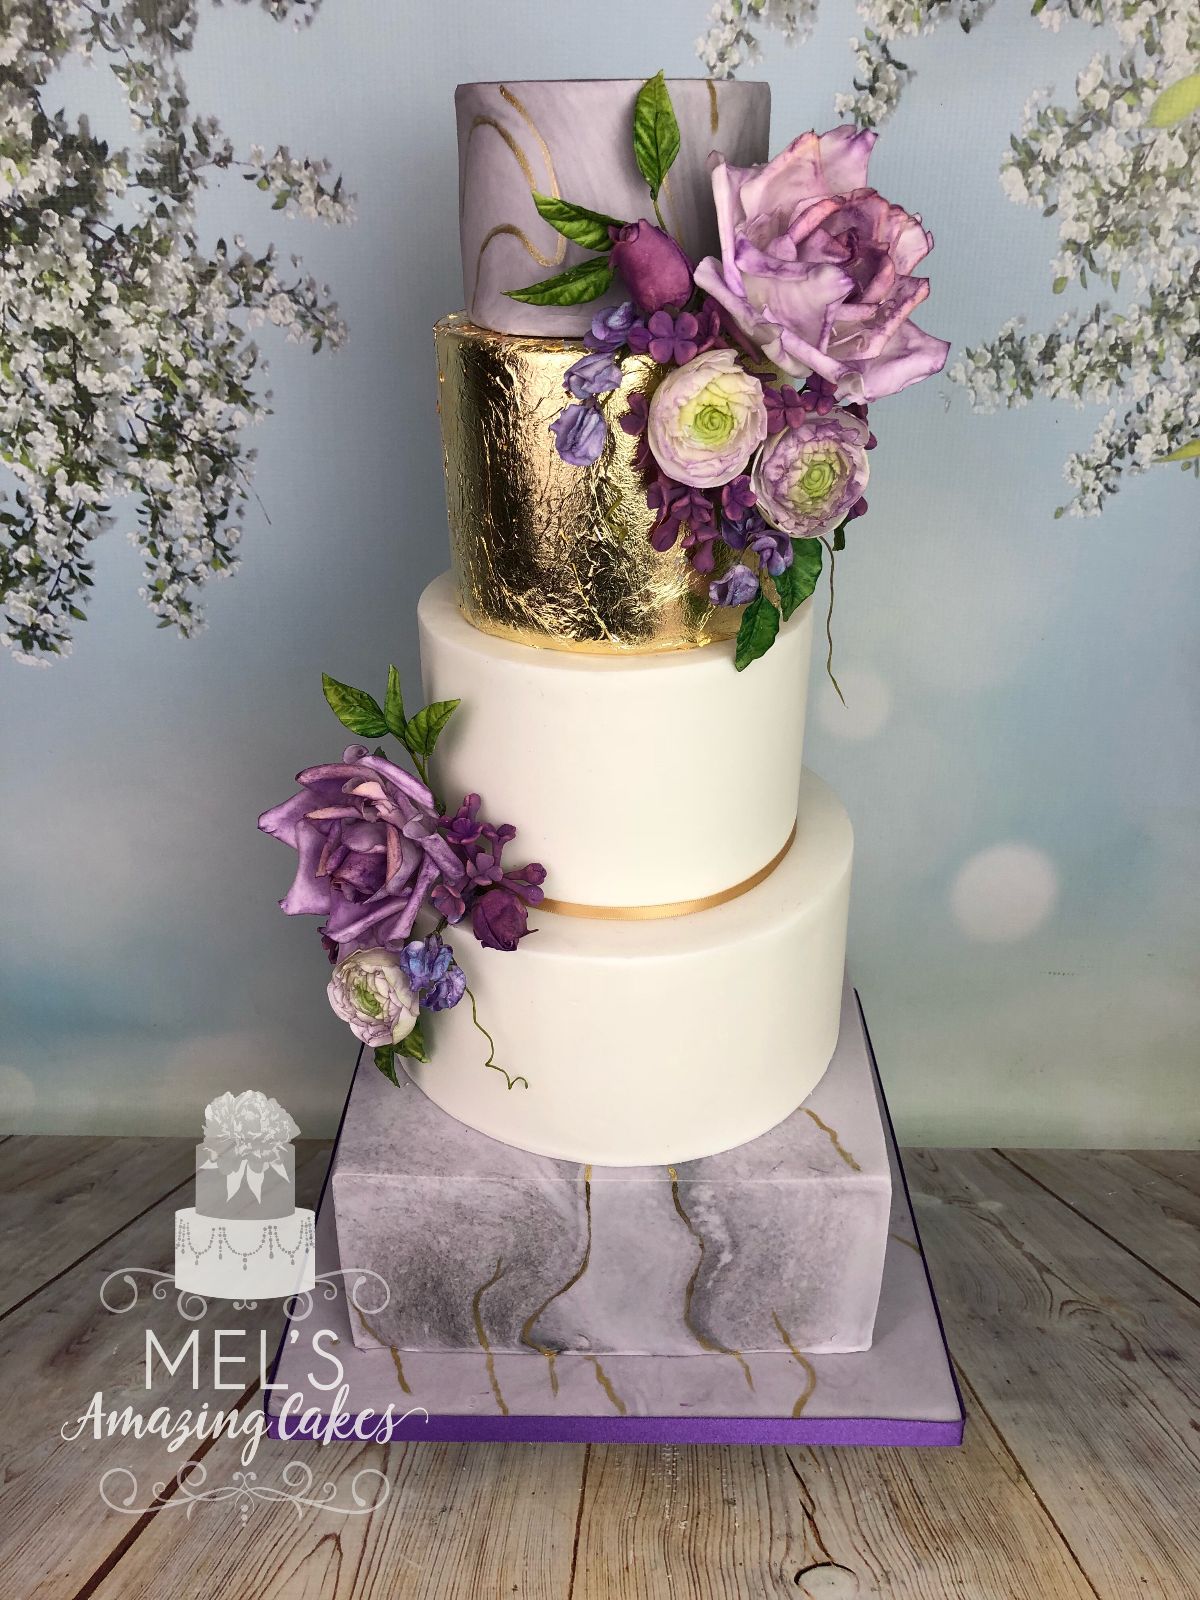 Mel's Amazing Cakes-Image-86